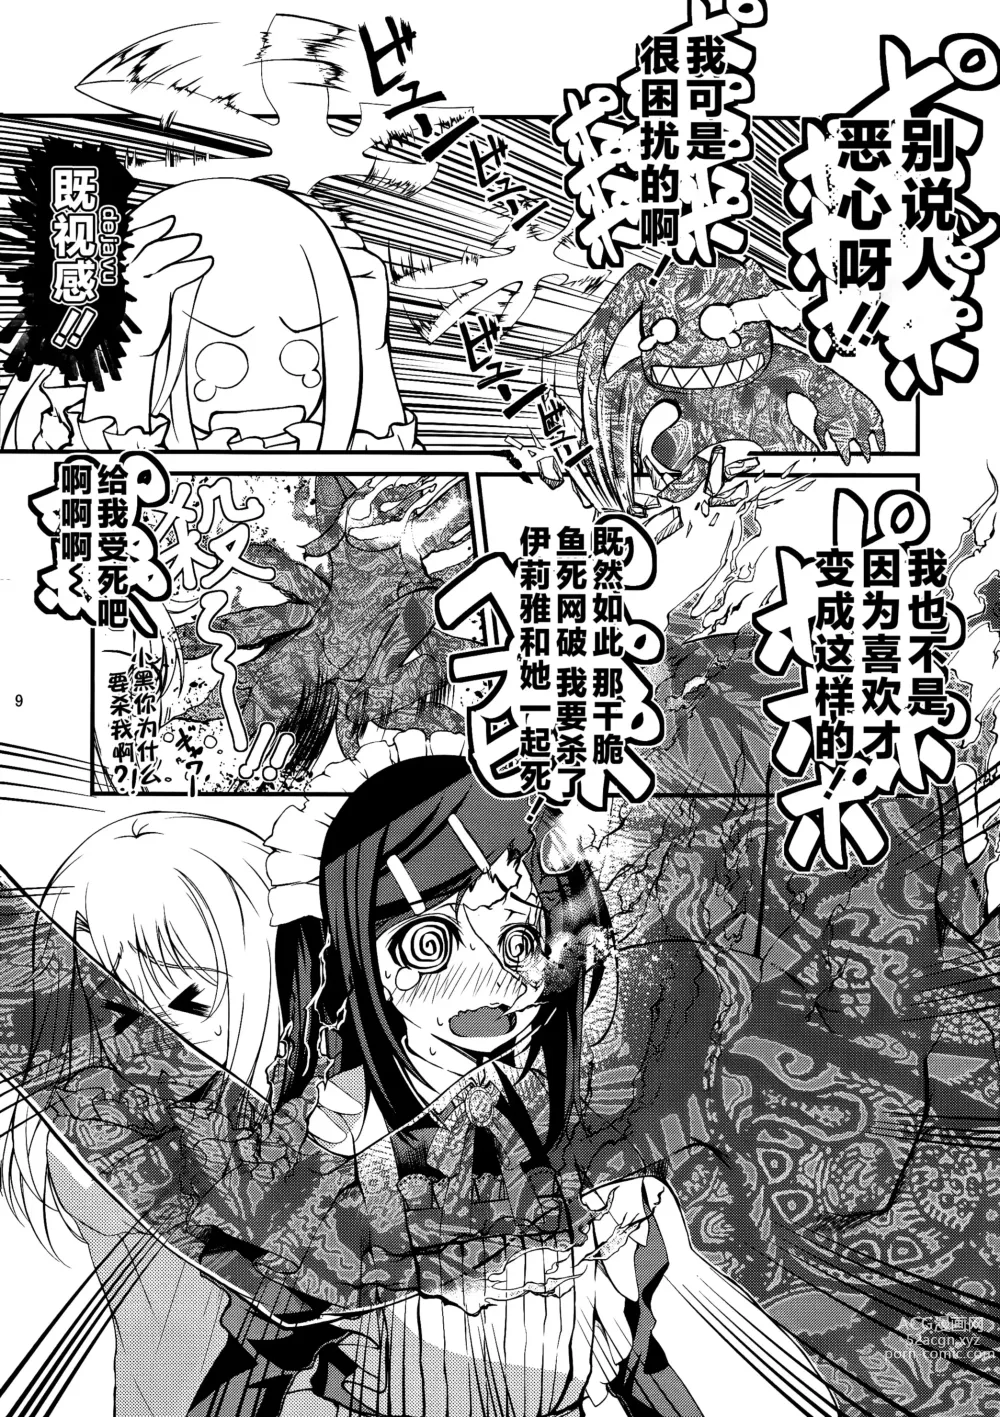 Page 8 of doujinshi SHH:01